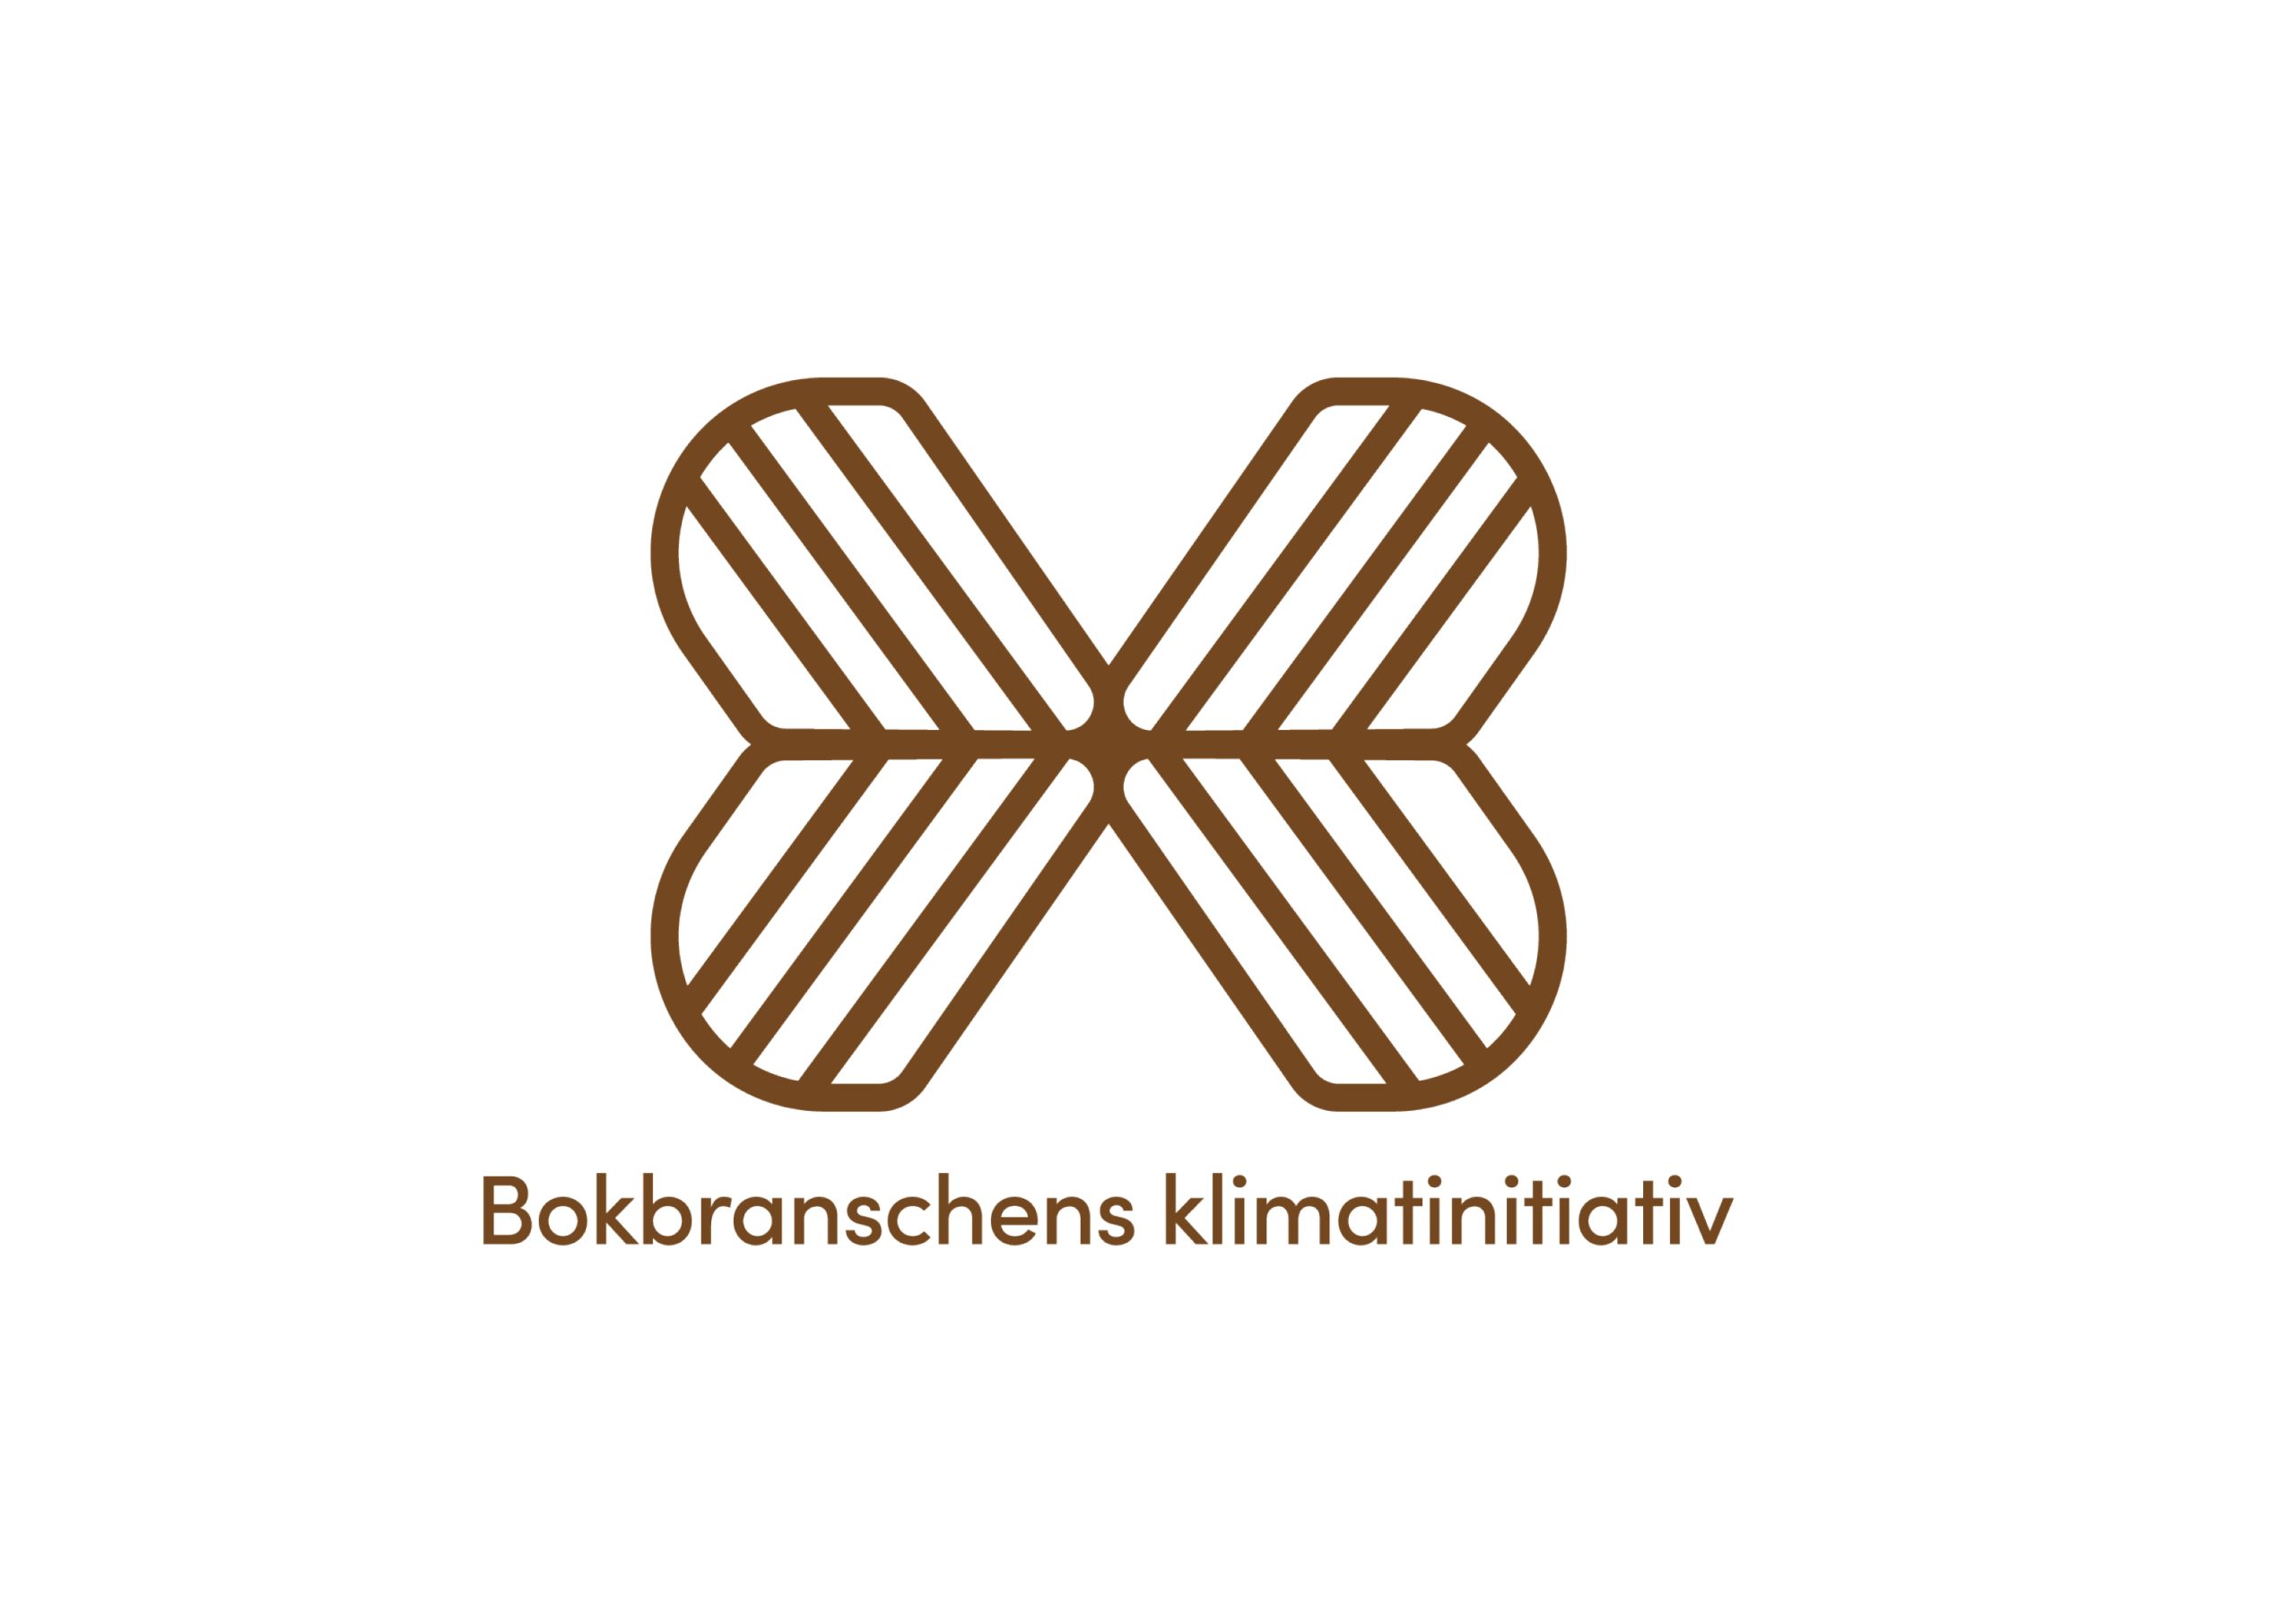 Bokbranschens klimatinitiativ - logotyp formgiven av Tegel & Hatt